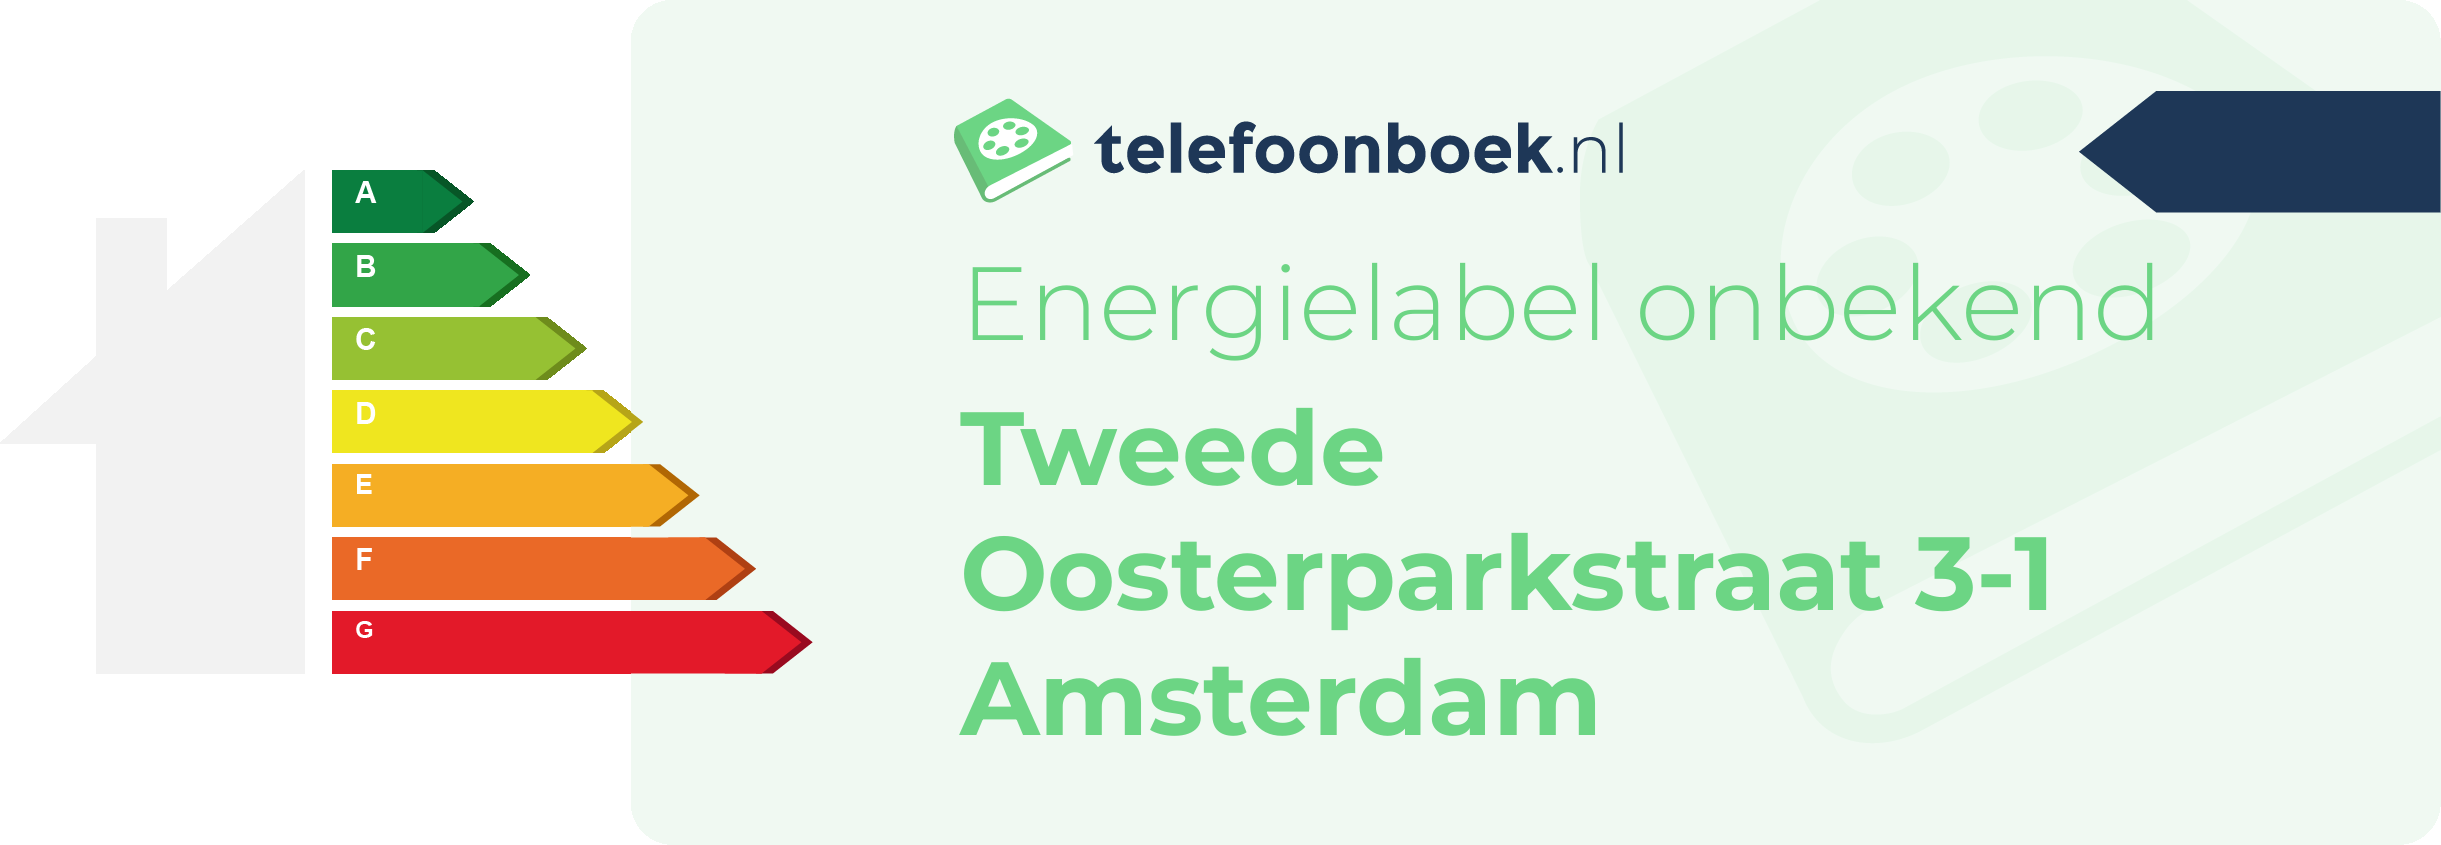 Energielabel Tweede Oosterparkstraat 3-1 Amsterdam